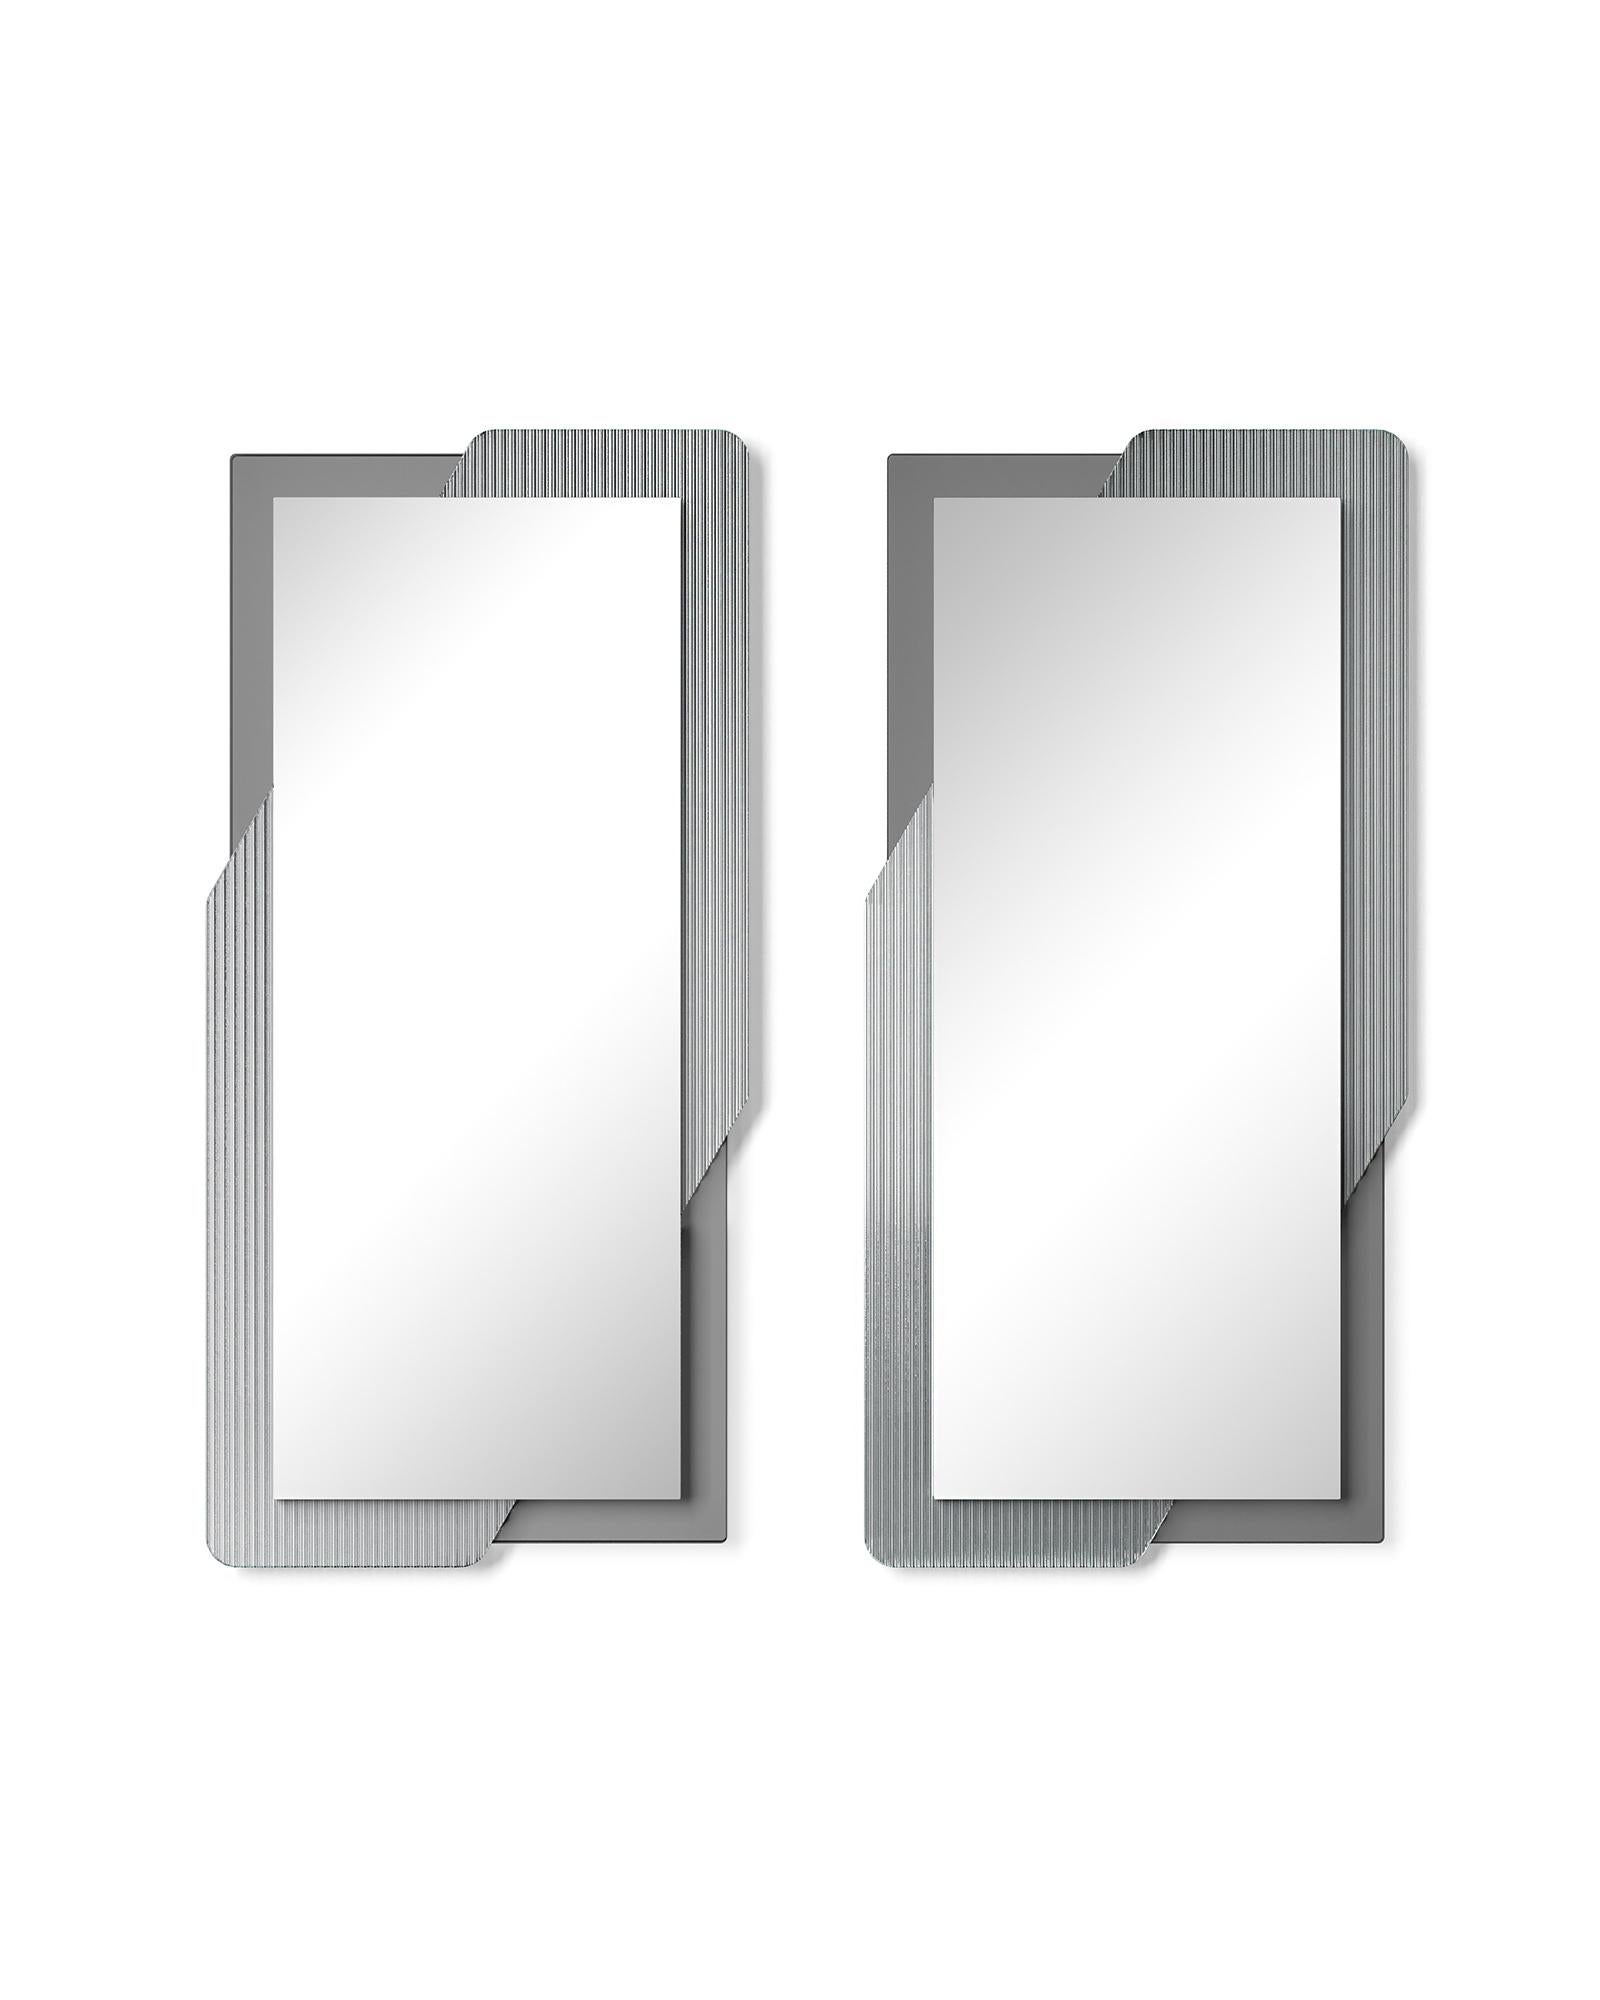 Autonome ou suspendu
miroir avec cadre composé
de deux éléments en verre :
une partie en 6 mm d'épaisseur
fusible haute température
verre en transparent
ou en bronze ; une partie
dans un verre plat de 6 mm d'épaisseur
en finition fumée ou